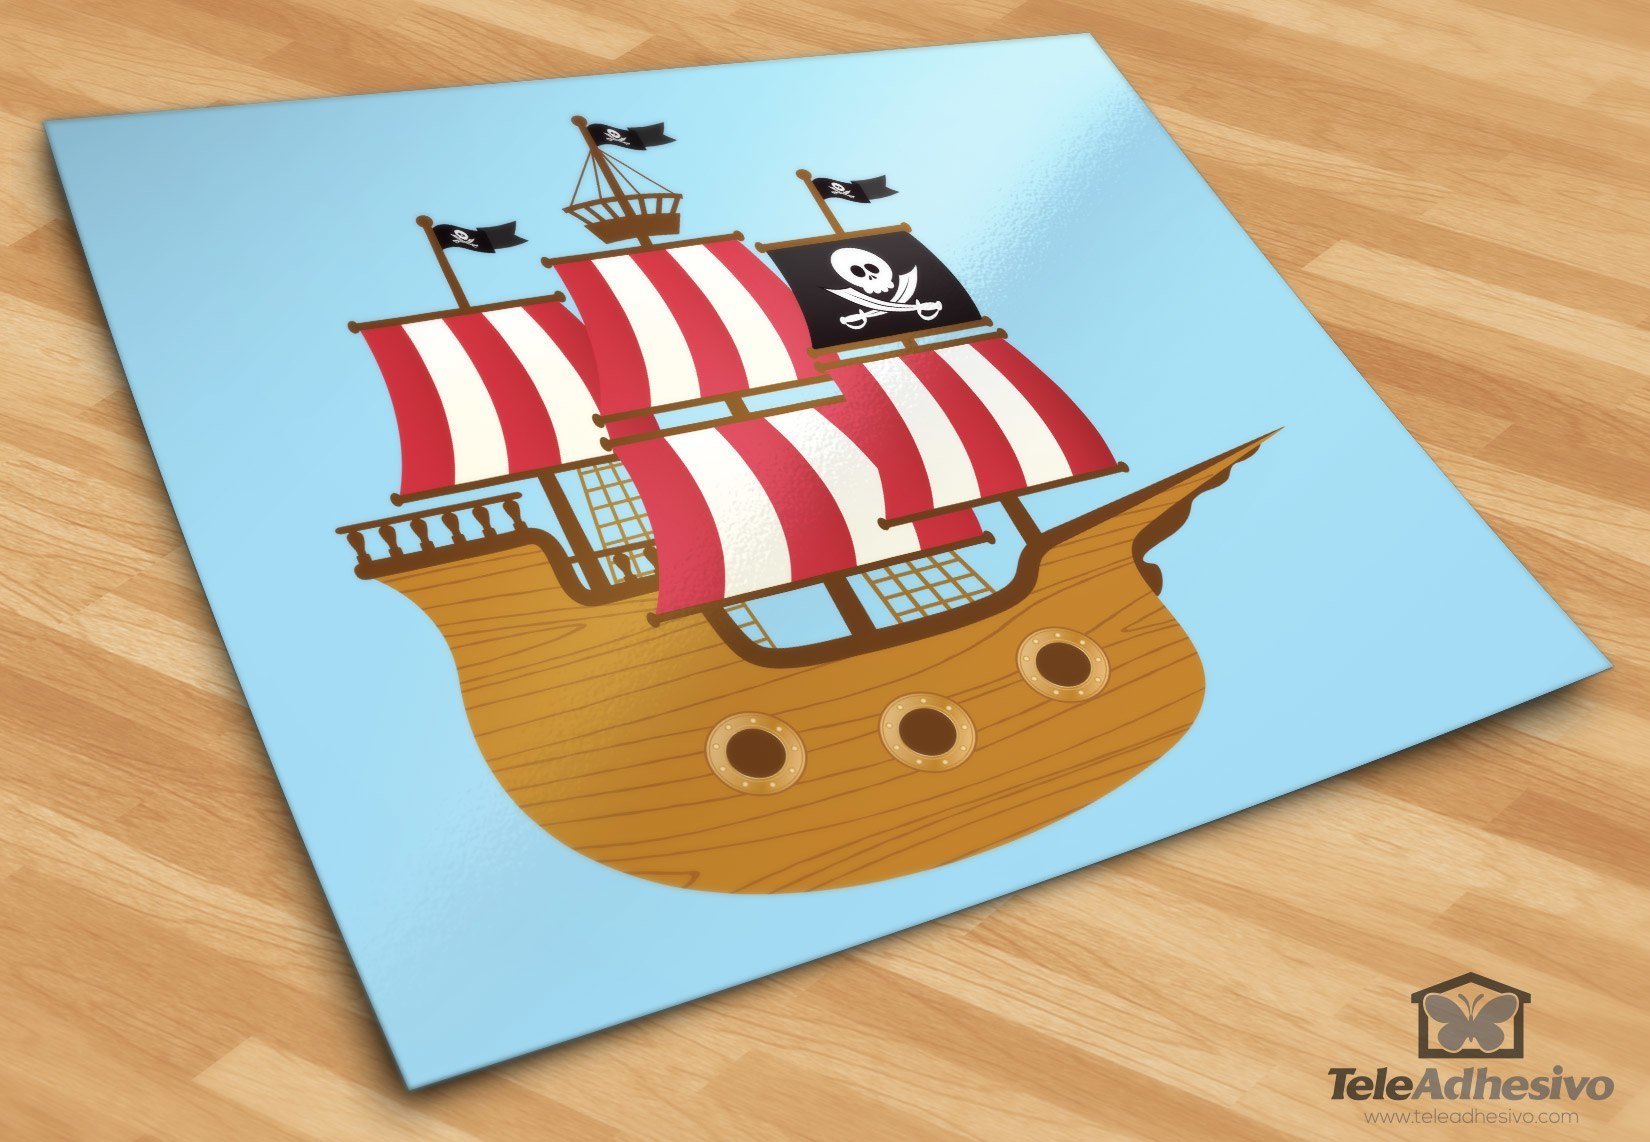 Adesivi per Bambini: Piccola barca pirata